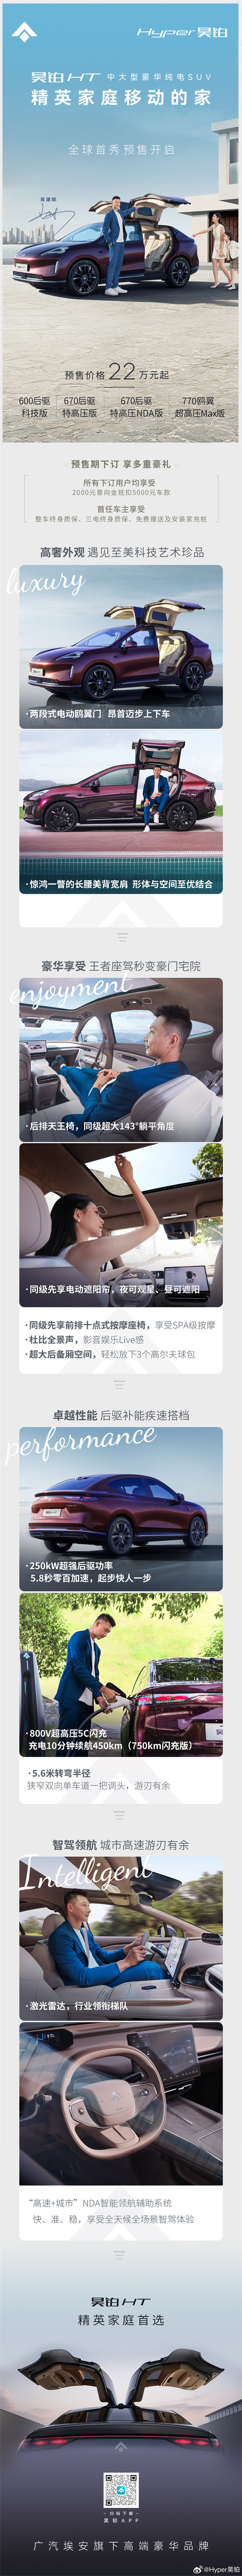 广汽埃安中大型豪华纯电 SUV 车型昊铂 HT 车型将于 11 月 15 日上市